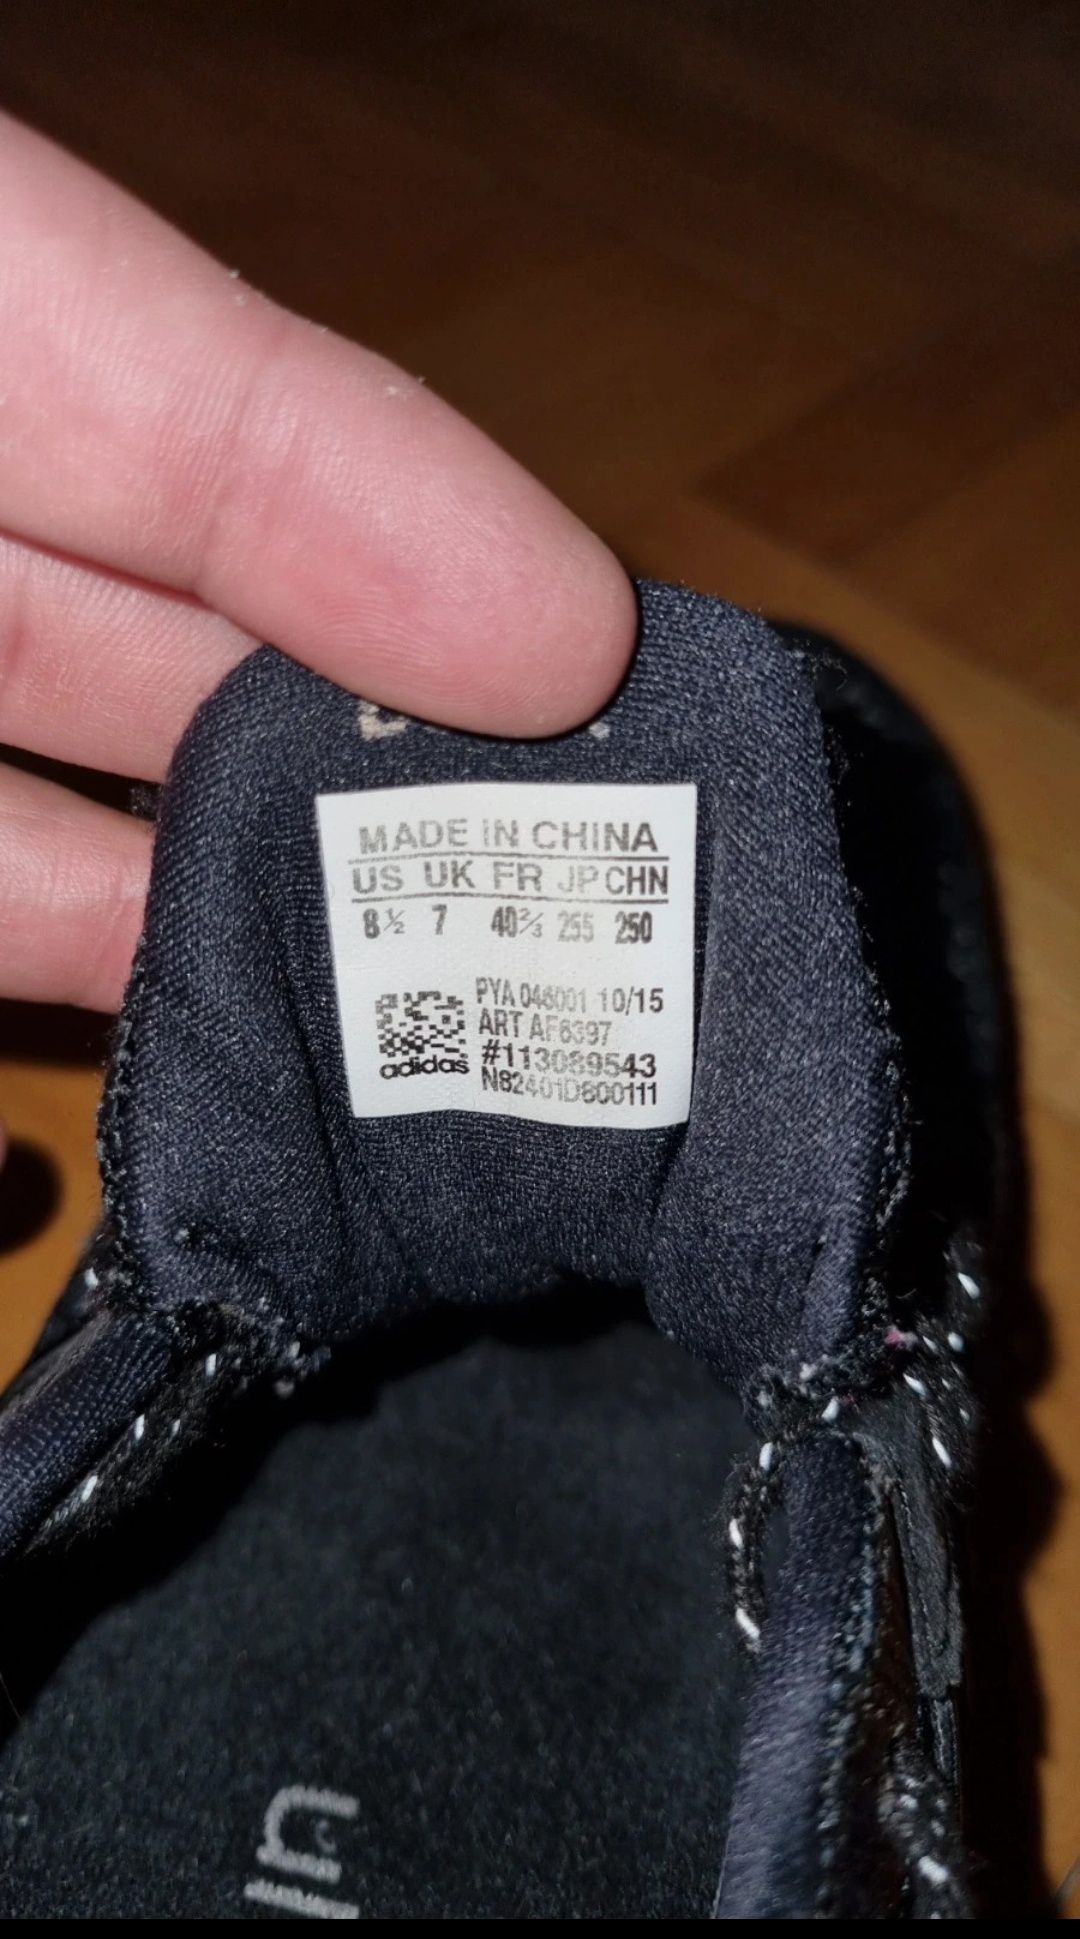 Adidas Originals Ultraboost 1.0 - Pantofi sport barbati - 40 2/3